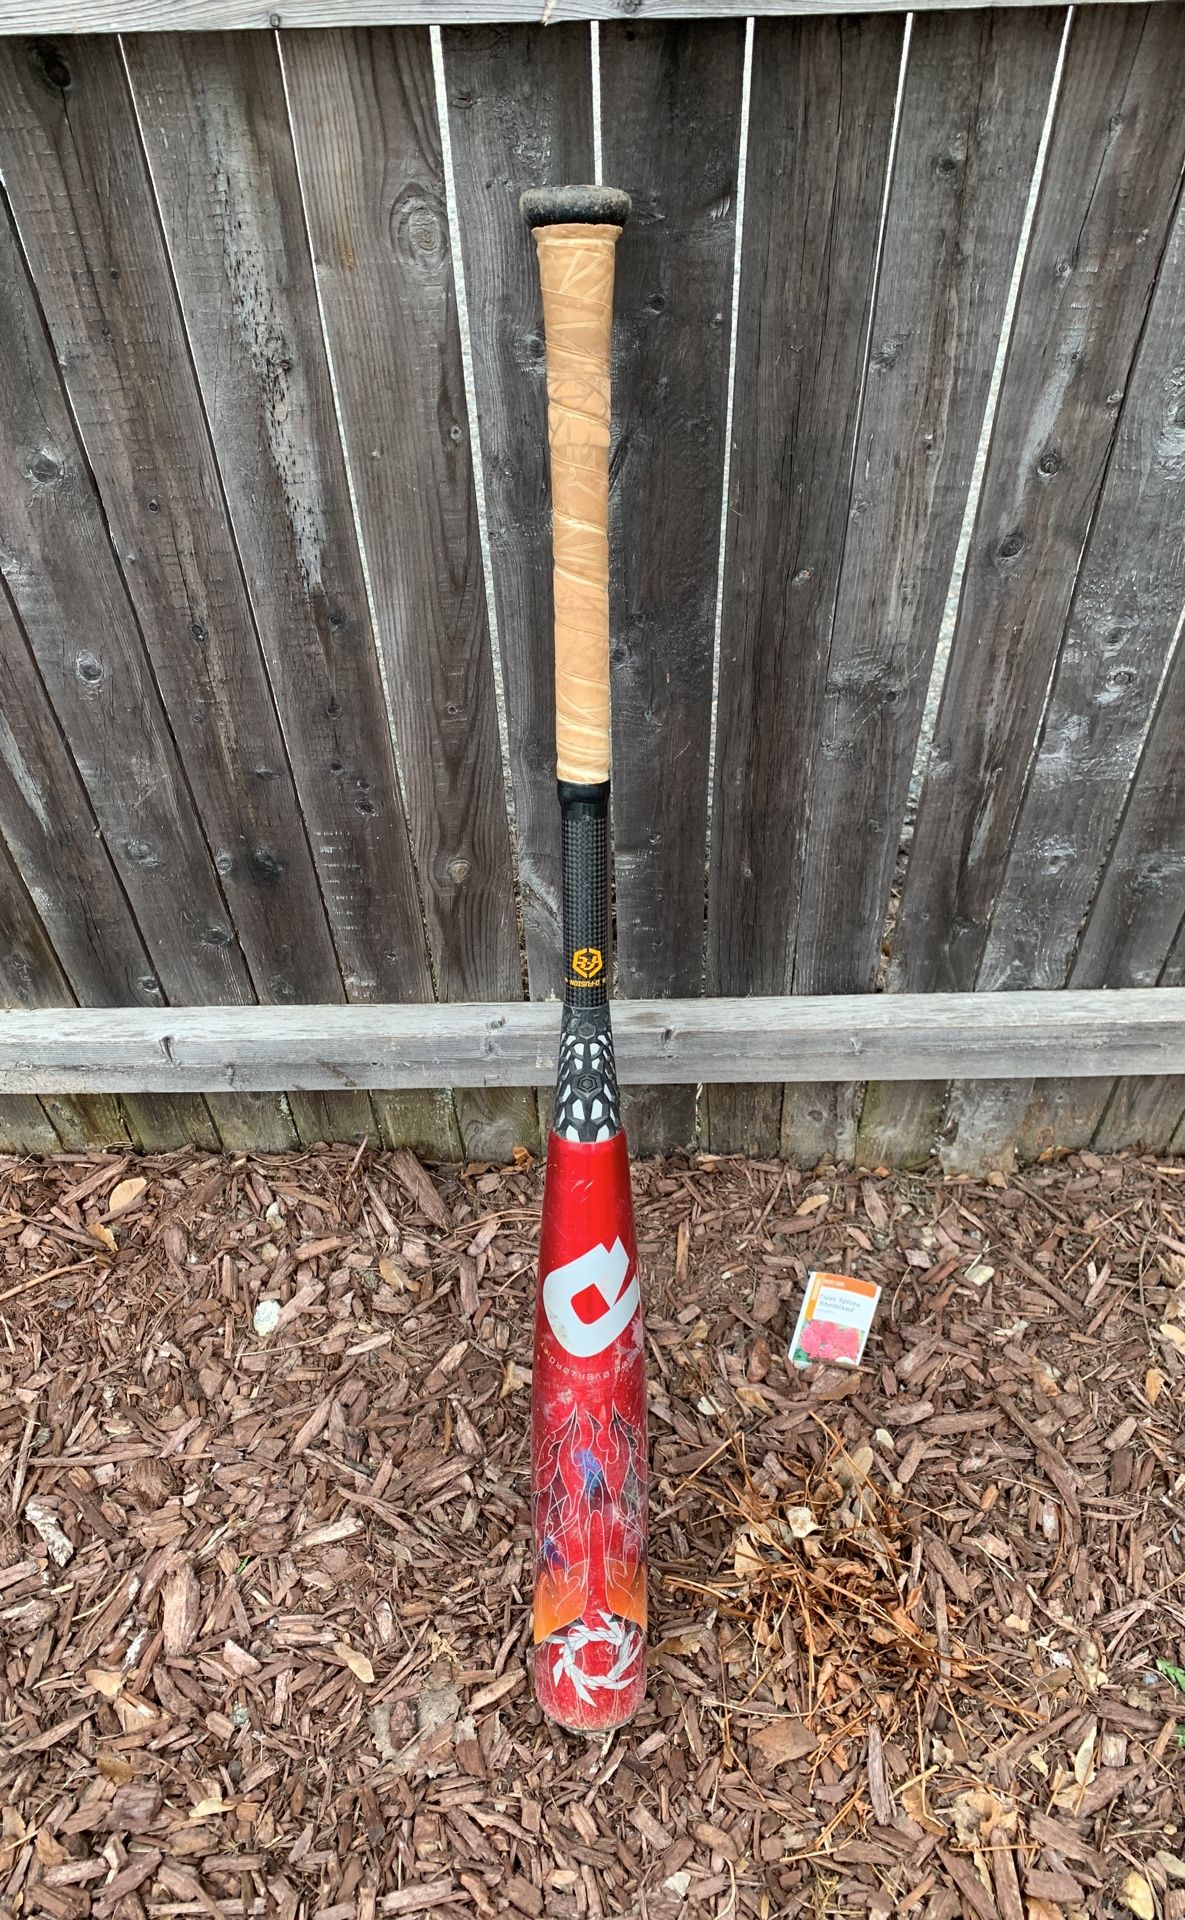 Bbcor baseball bat